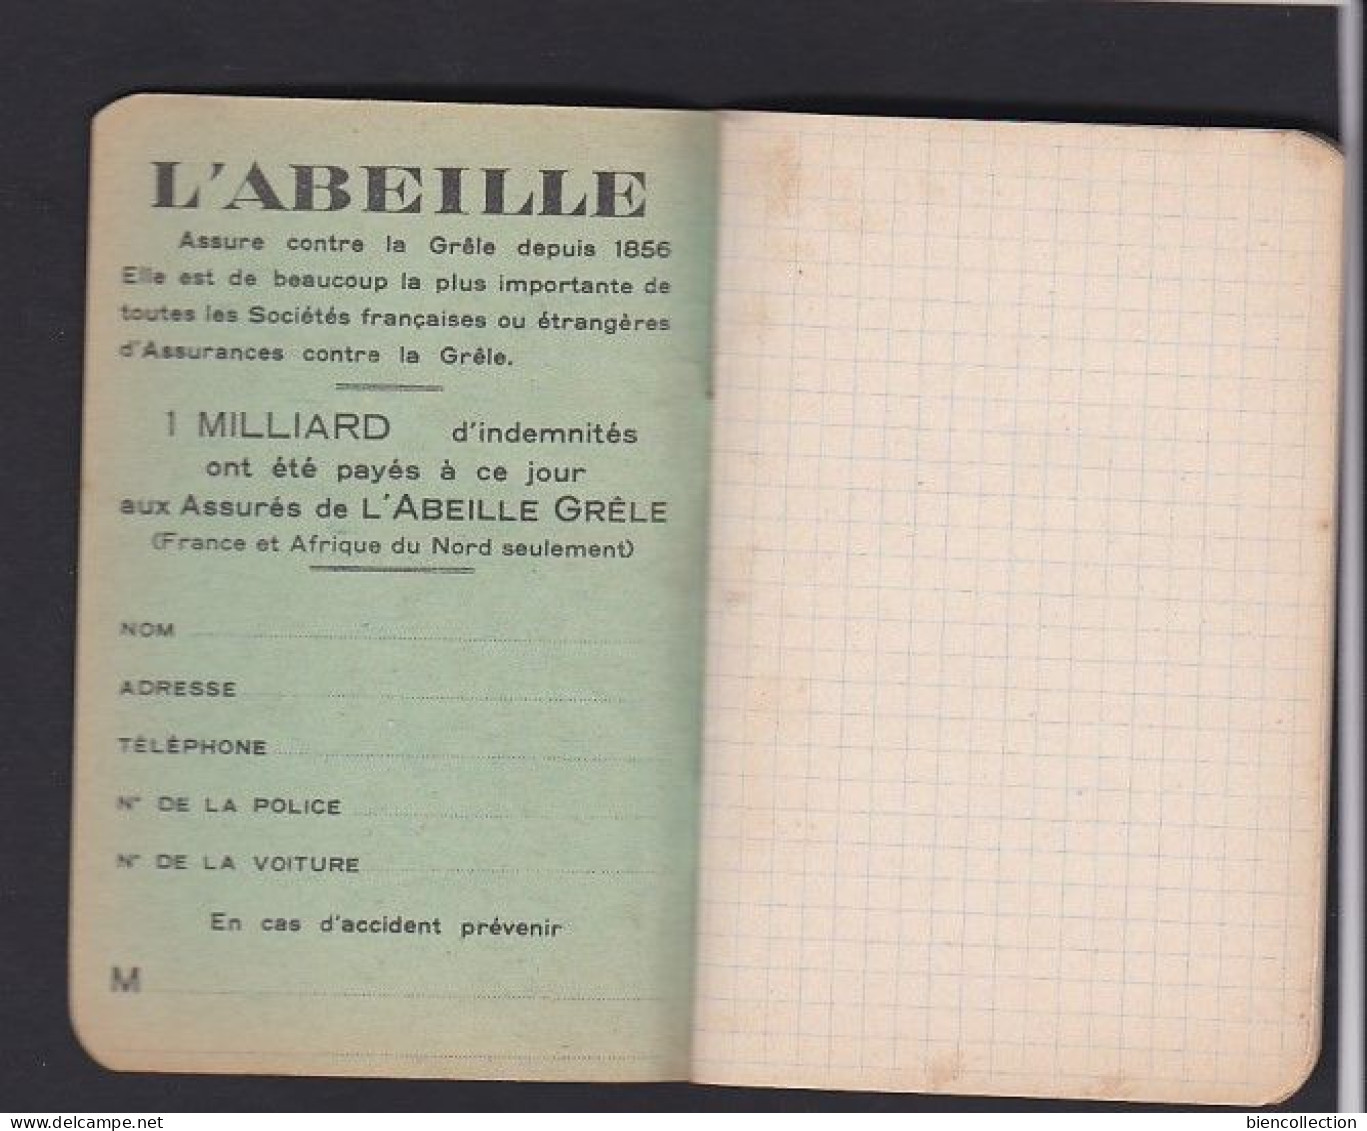 Petit Carnet De Note "publicité L'abeille" ; 40 Pages ; Carnet Neuf Sans Aucunes Inscriptions. 12cm X 8cm - Materiaal En Toebehoren